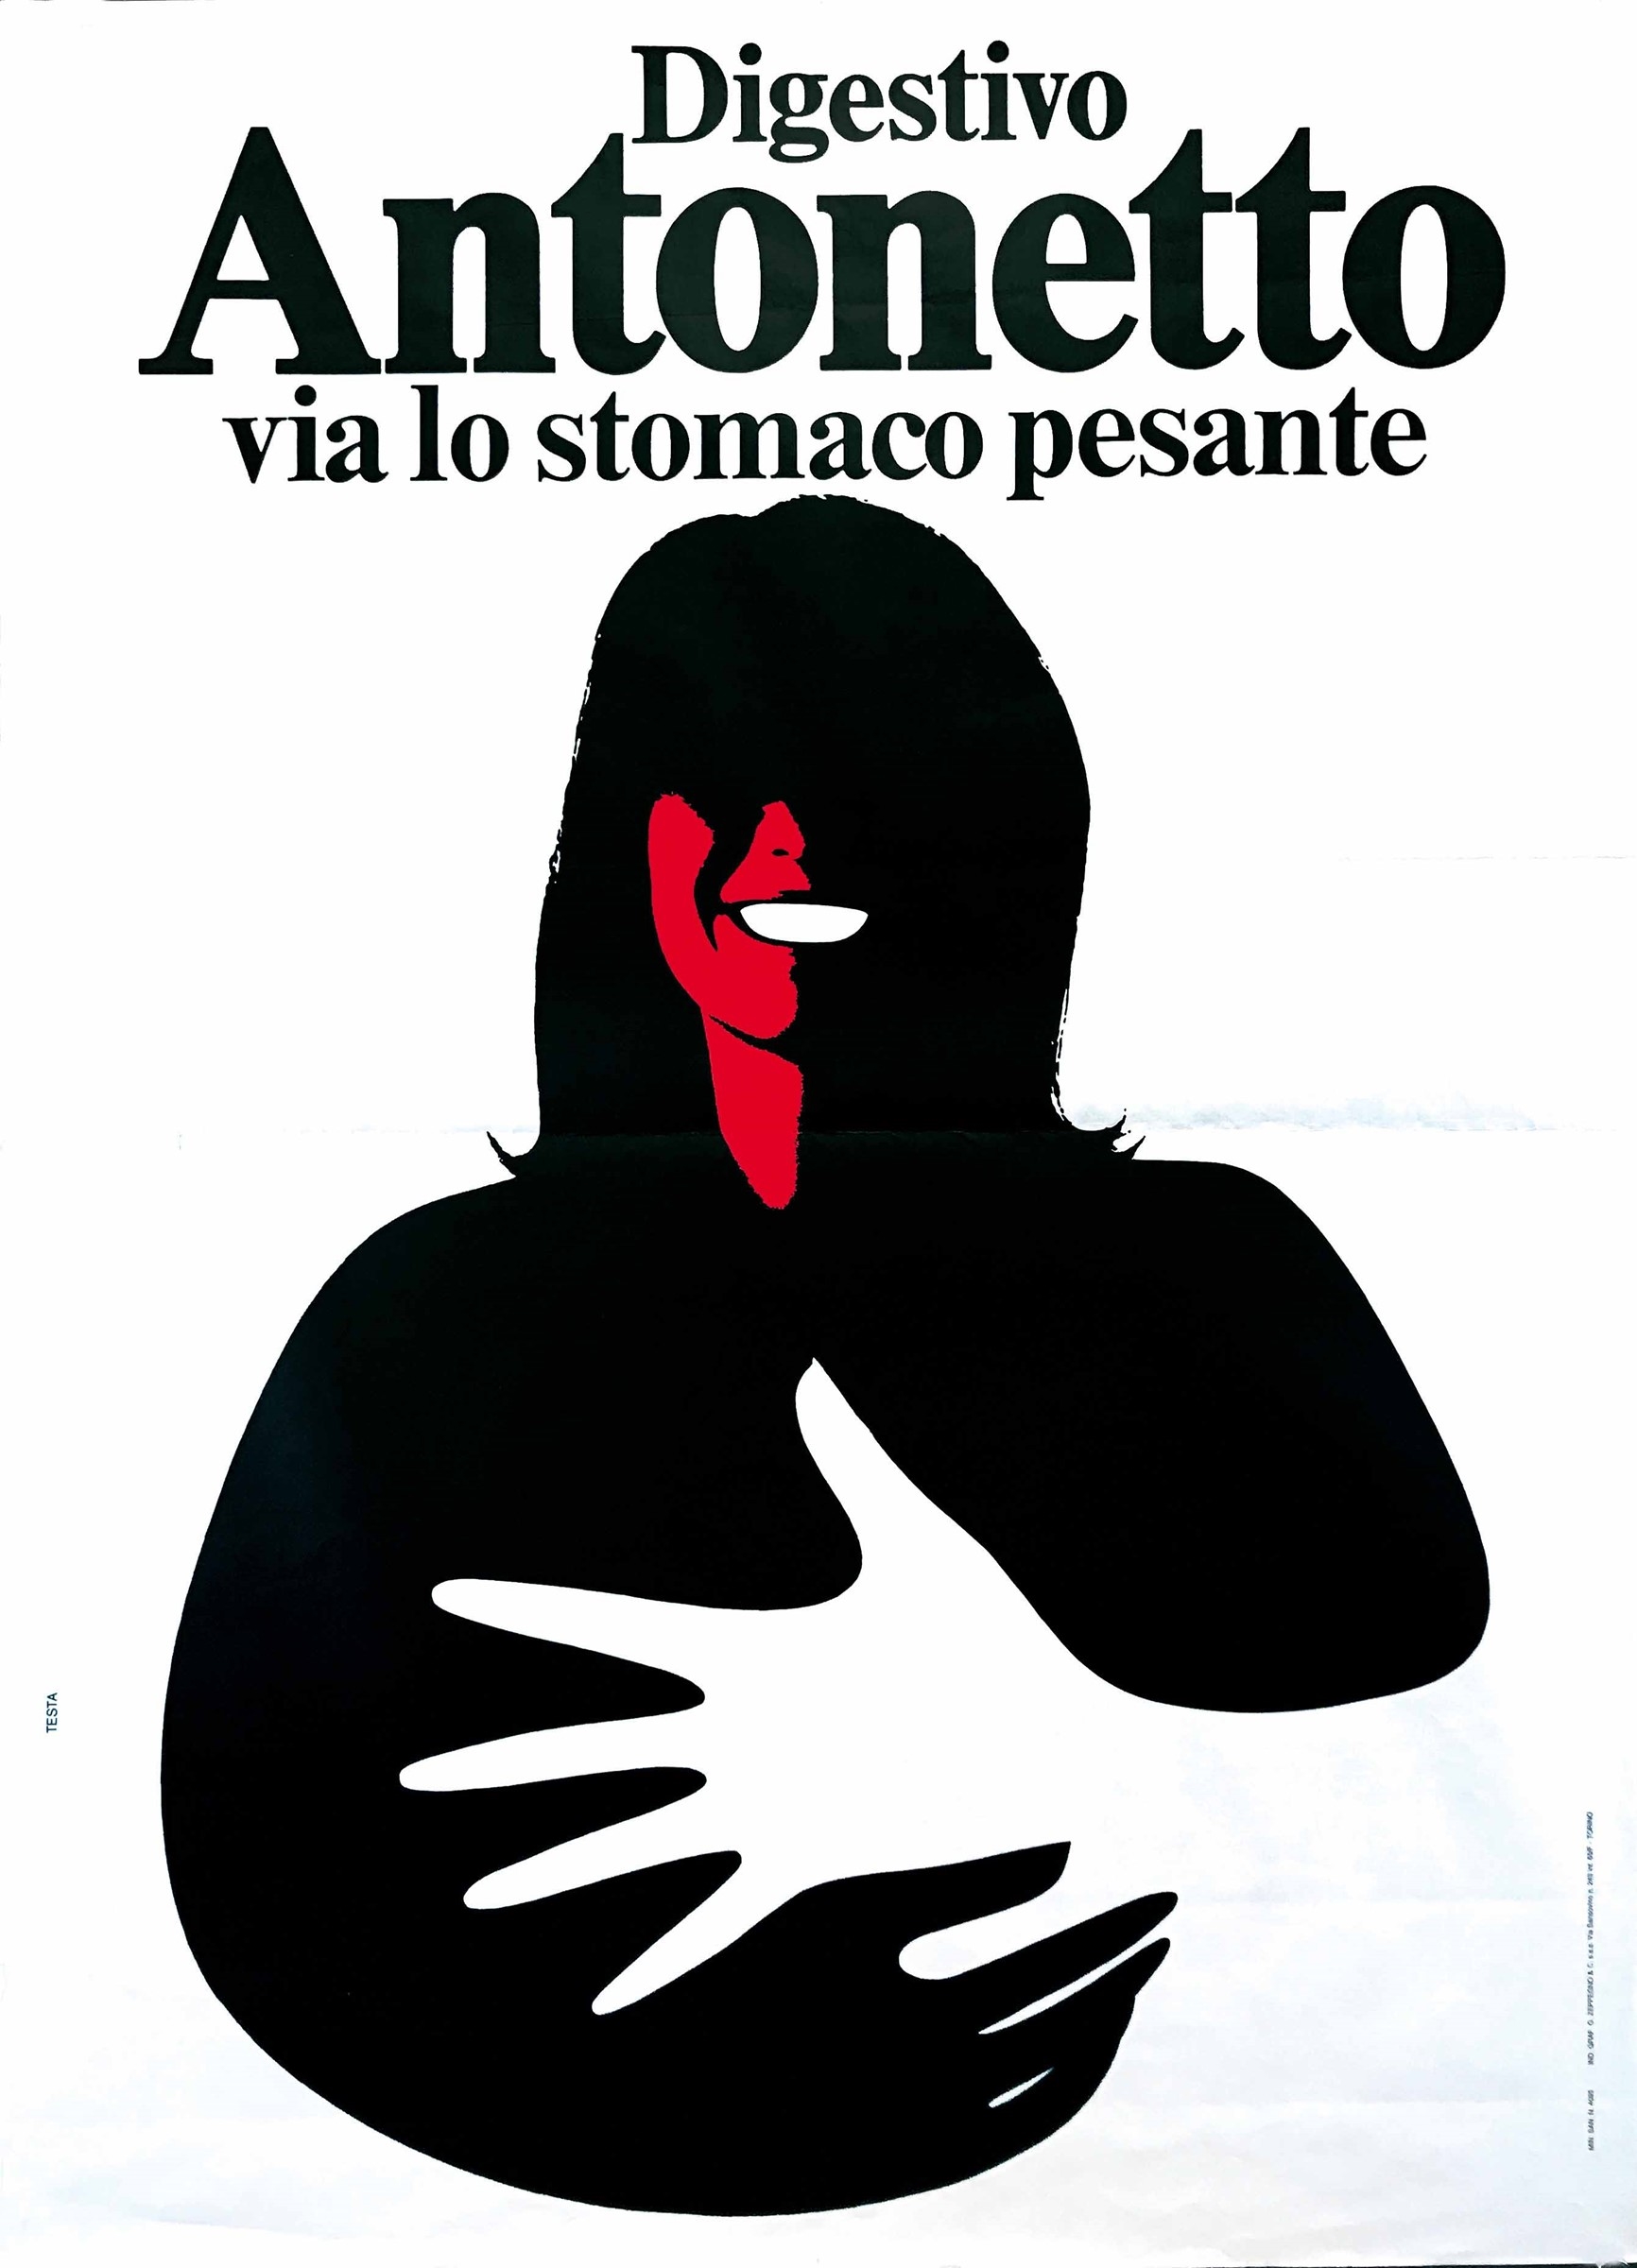 DIGESTIVO ANTONETTO, VIA LO STOMACO PESANTE by Armando Testa, 1974